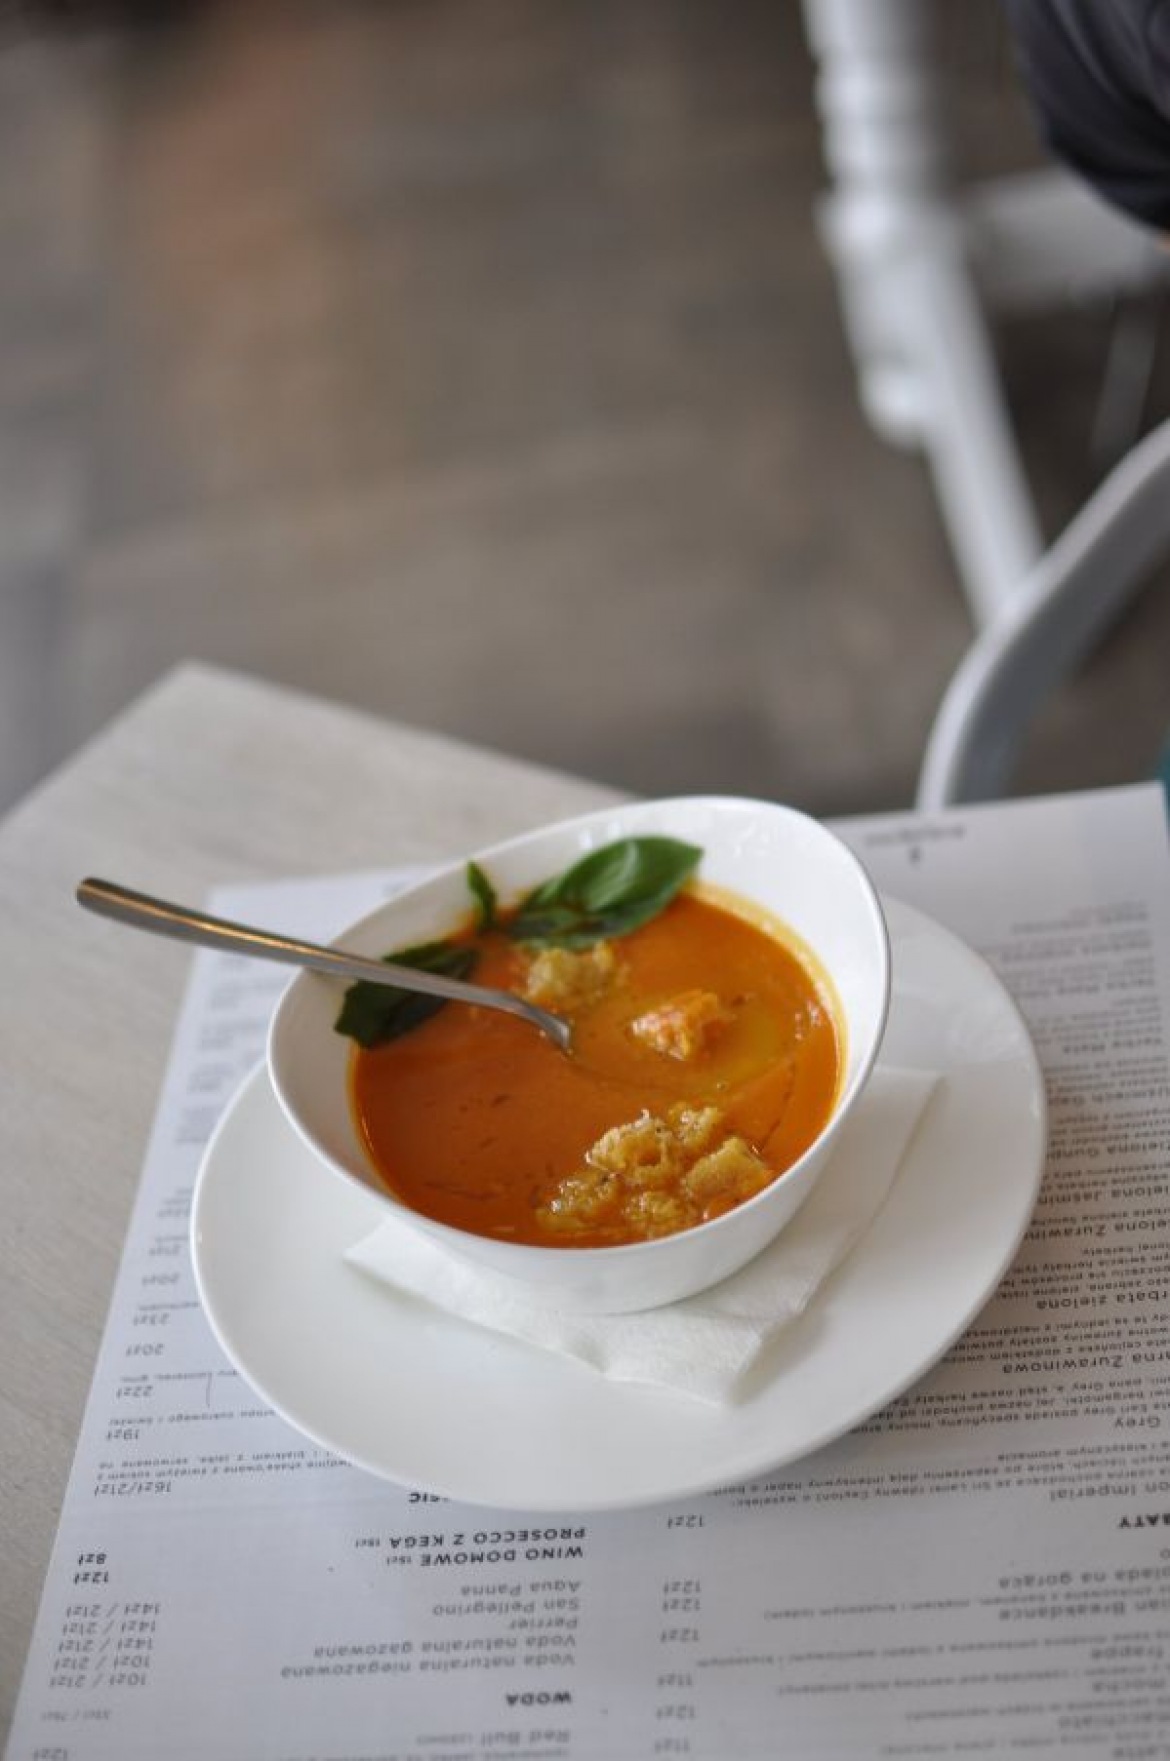 Z cyklu: Zimowe zupy ekspresowo. Krem pomidorowy z gruszką! | Make Cooking Easier (1182)